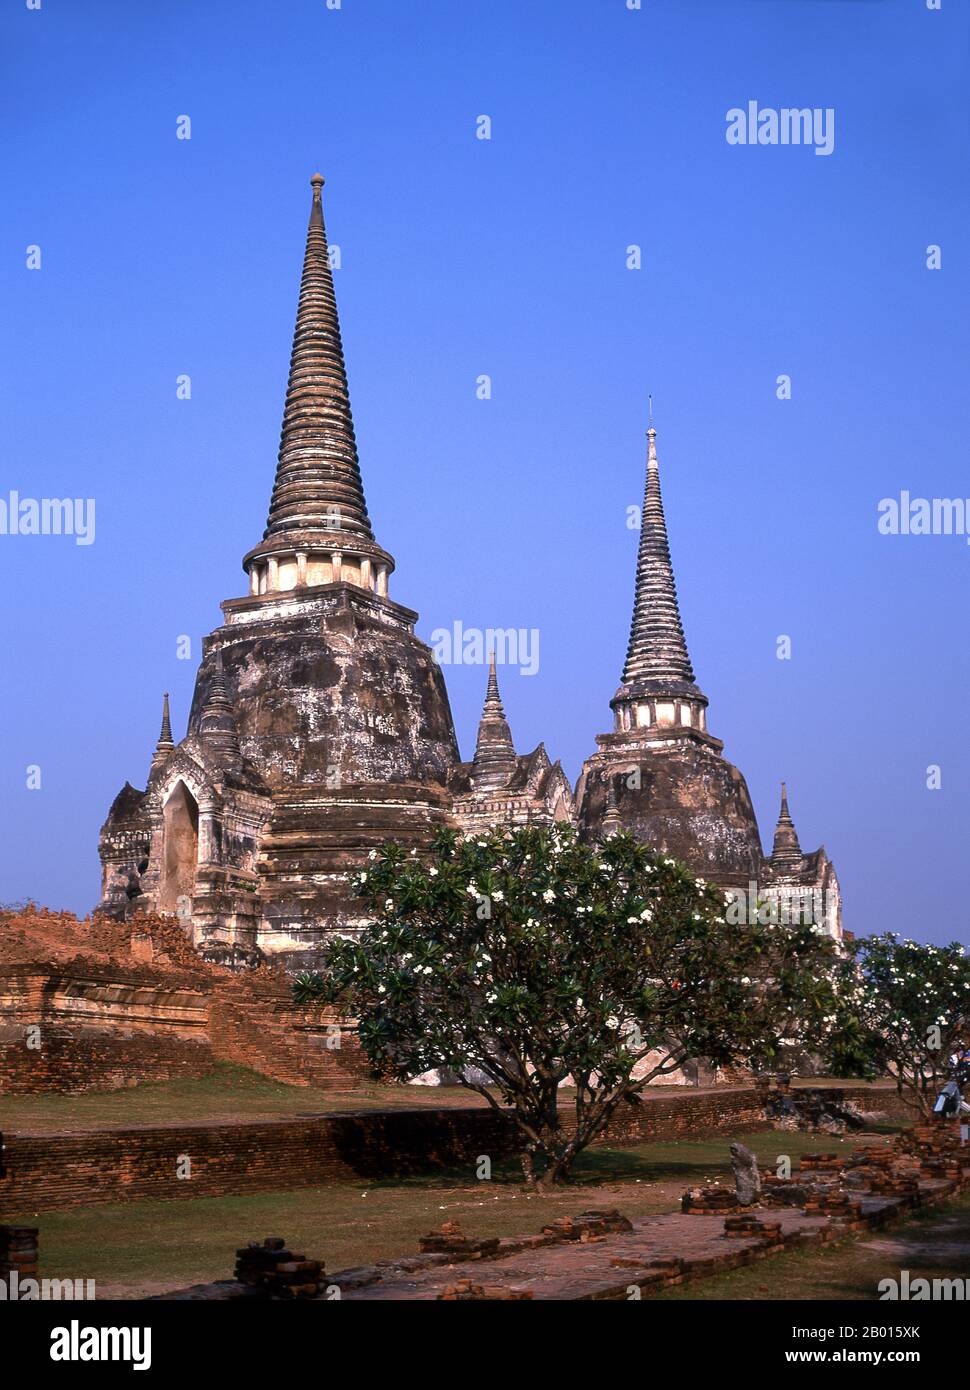 Thailandia: Wat Phra si Sanphet, Ayutthaya Historical Park. Wat Phra si Sanphet fu costruito intorno al 1448 durante il regno di re Borommatrailokanat, noto anche come Somdet Phra Ramesuan Boromma Trailokanat Bopit (1431–1488) che fu il re di Ayutthaya dal 1448 al 1488. Ayutthaya (Ayudhya) era un regno siamese che esisteva dal 1351 al 1767. Ayutthaya era amichevole verso i commercianti stranieri, compreso il cinese, vietnamita (Annamese), indiani, giapponesi e persiani, E poi i portoghesi, spagnoli, olandesi e francesi, permettendo loro di creare villaggi fuori dalle mura della città. Foto Stock